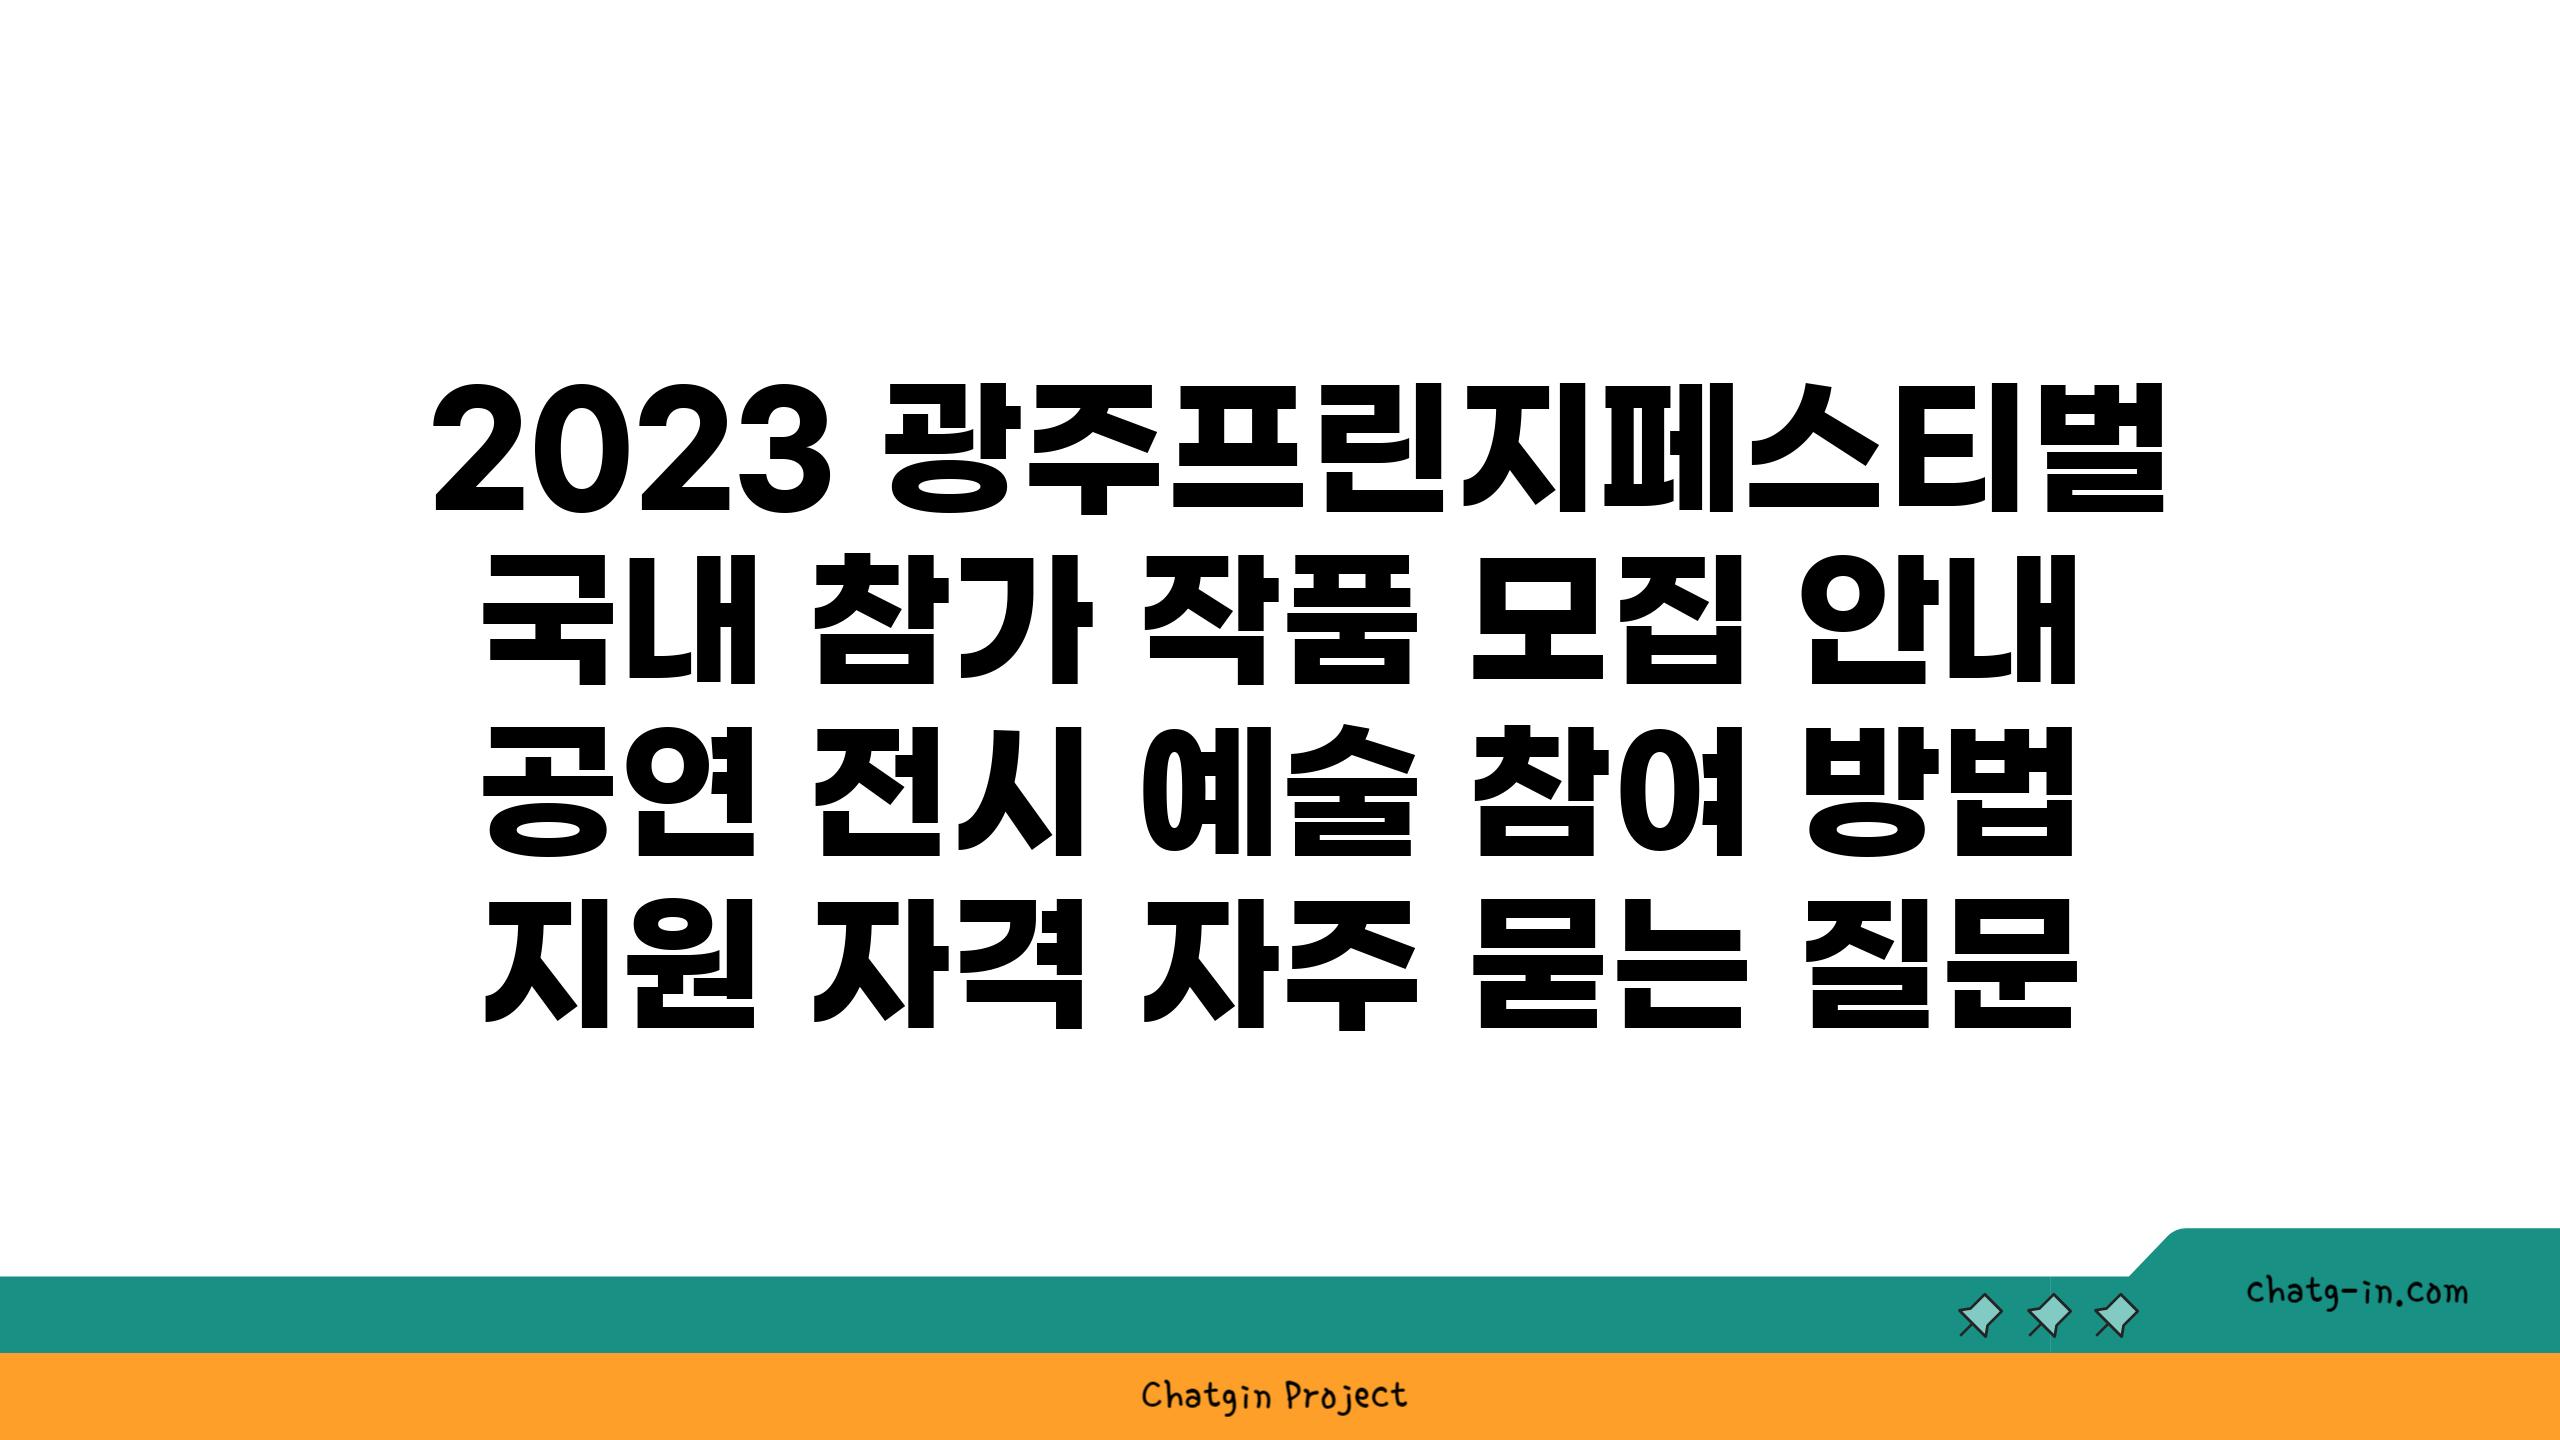  2023 광주프린지페스티벌 국내 참가 작품 모집 안내  공연 전시 예술 참여 방법 지원 자격 자주 묻는 질문